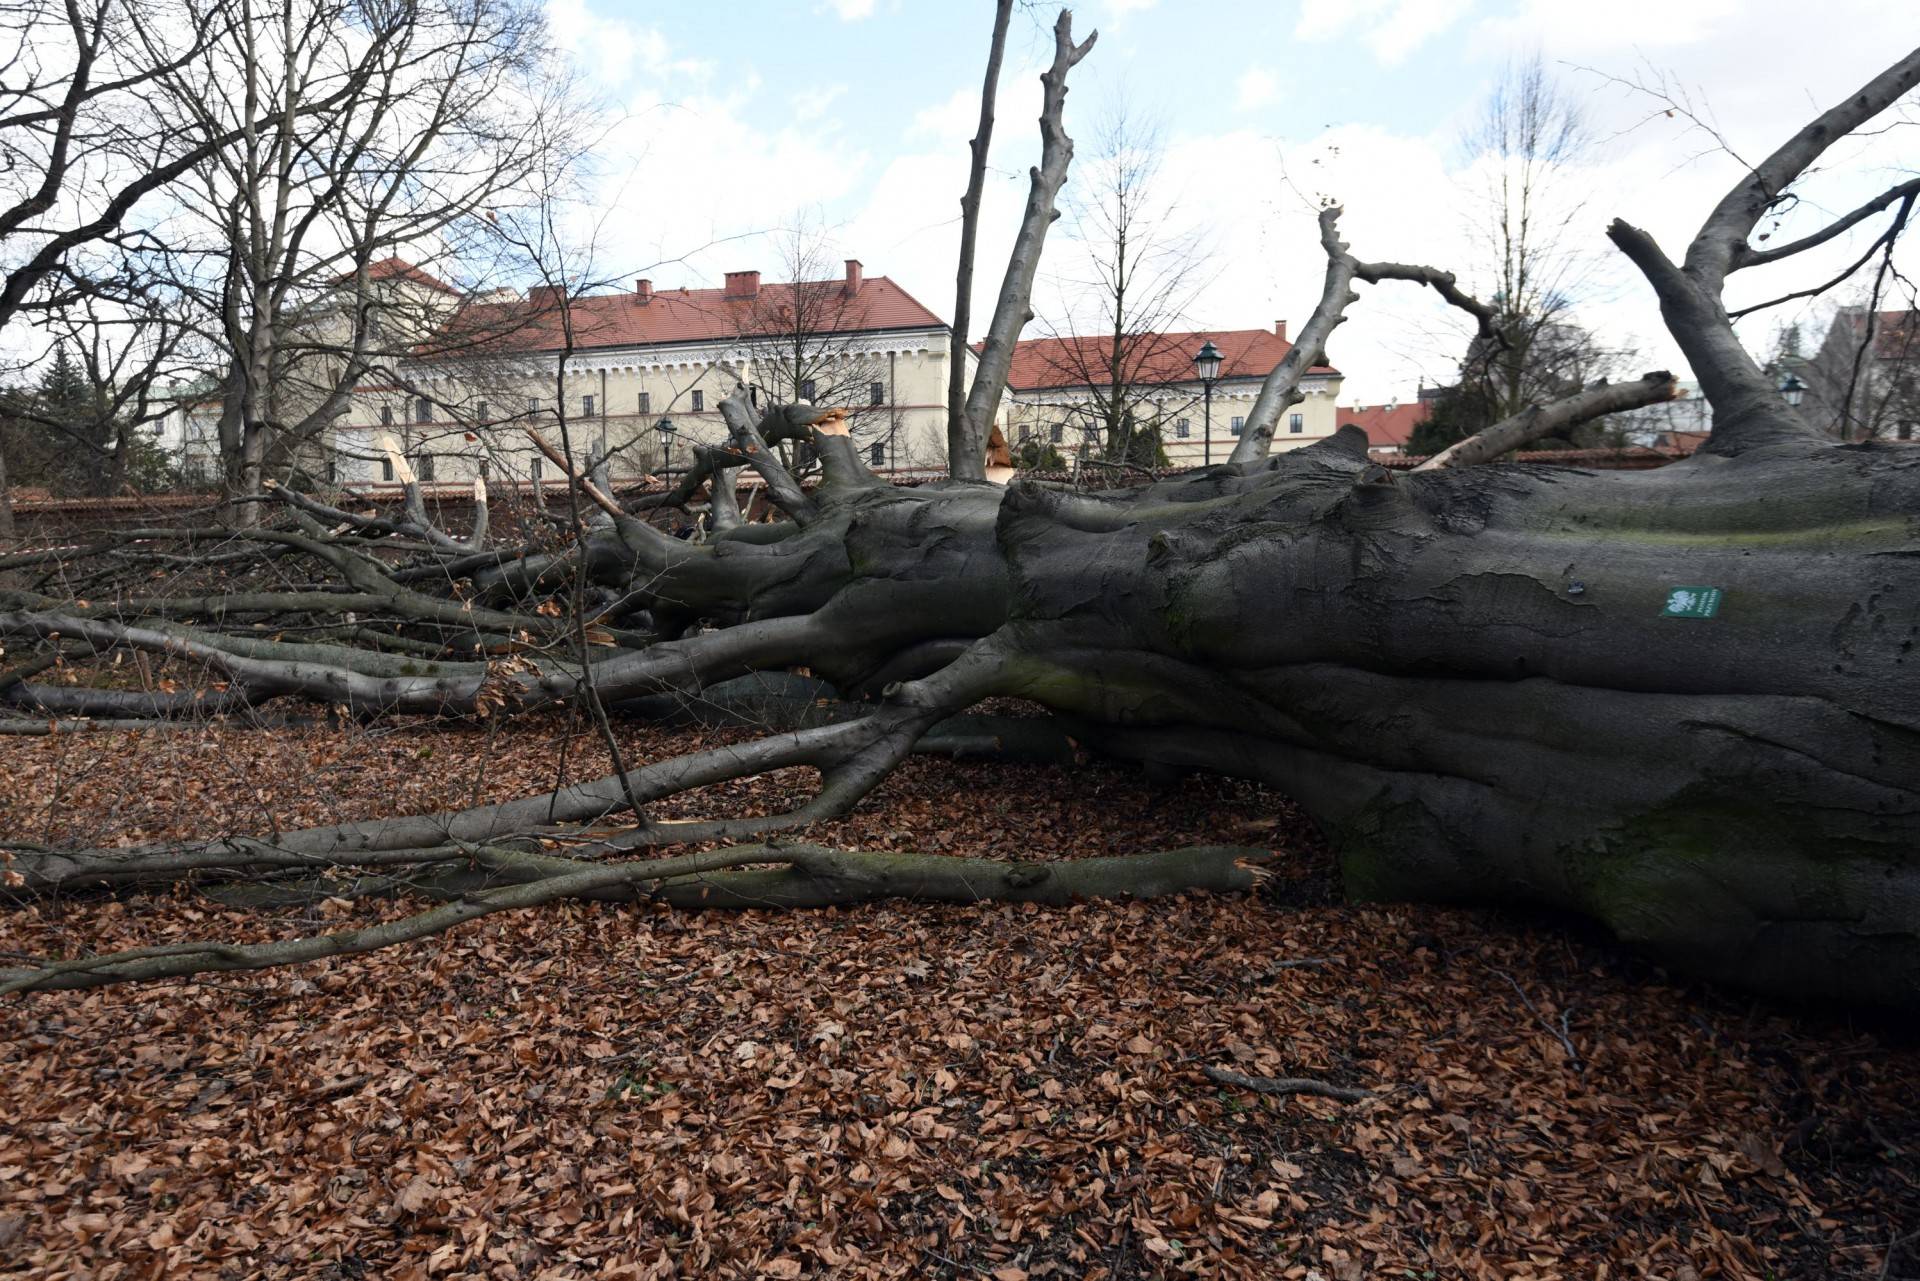 Jedno z najpiękniejszych krakowskich drzew powalone, wichura zniszczyła buk na plantach